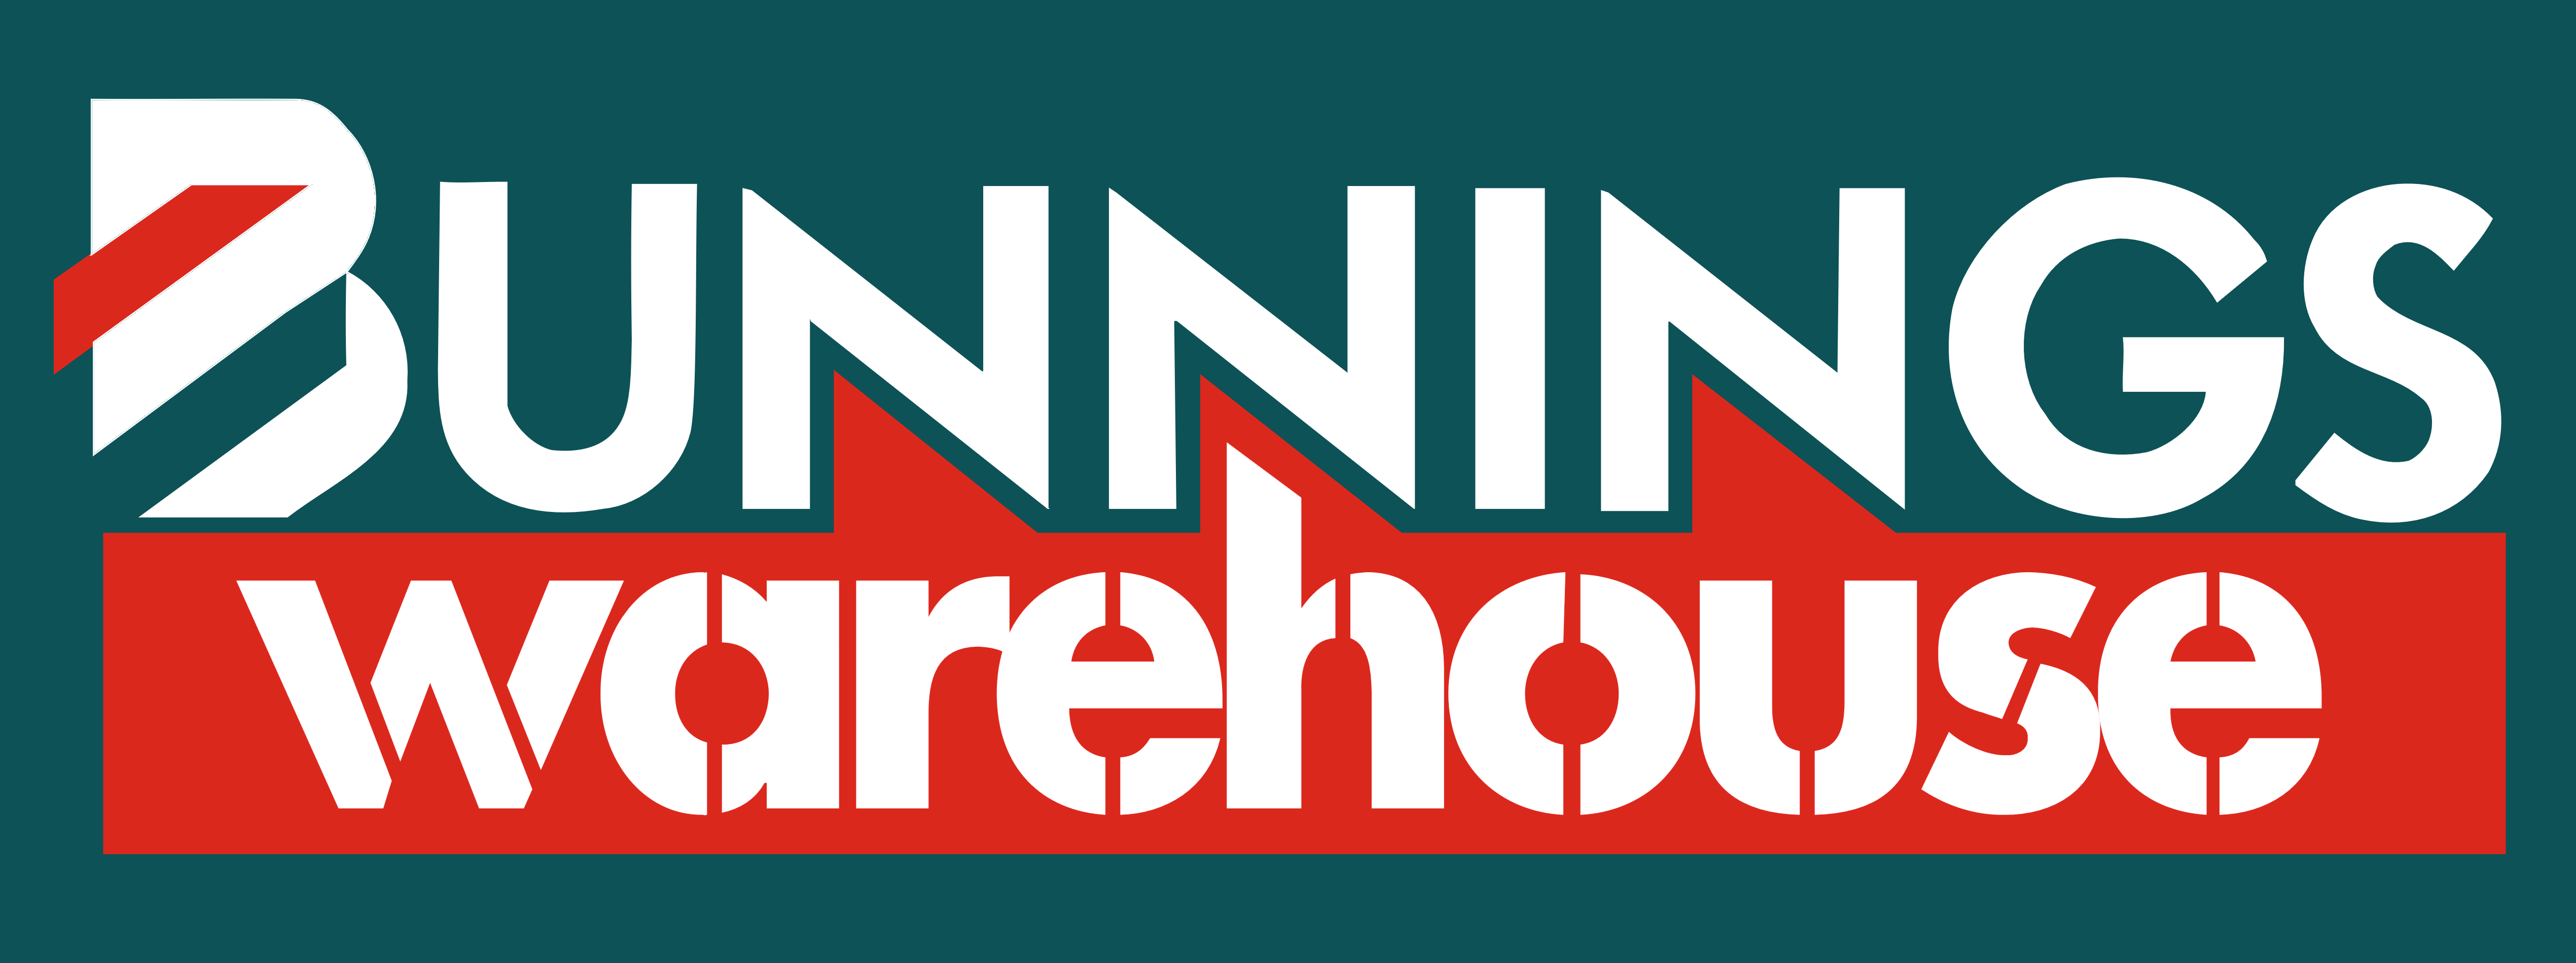 Bunnings Warehouse – Logos Download